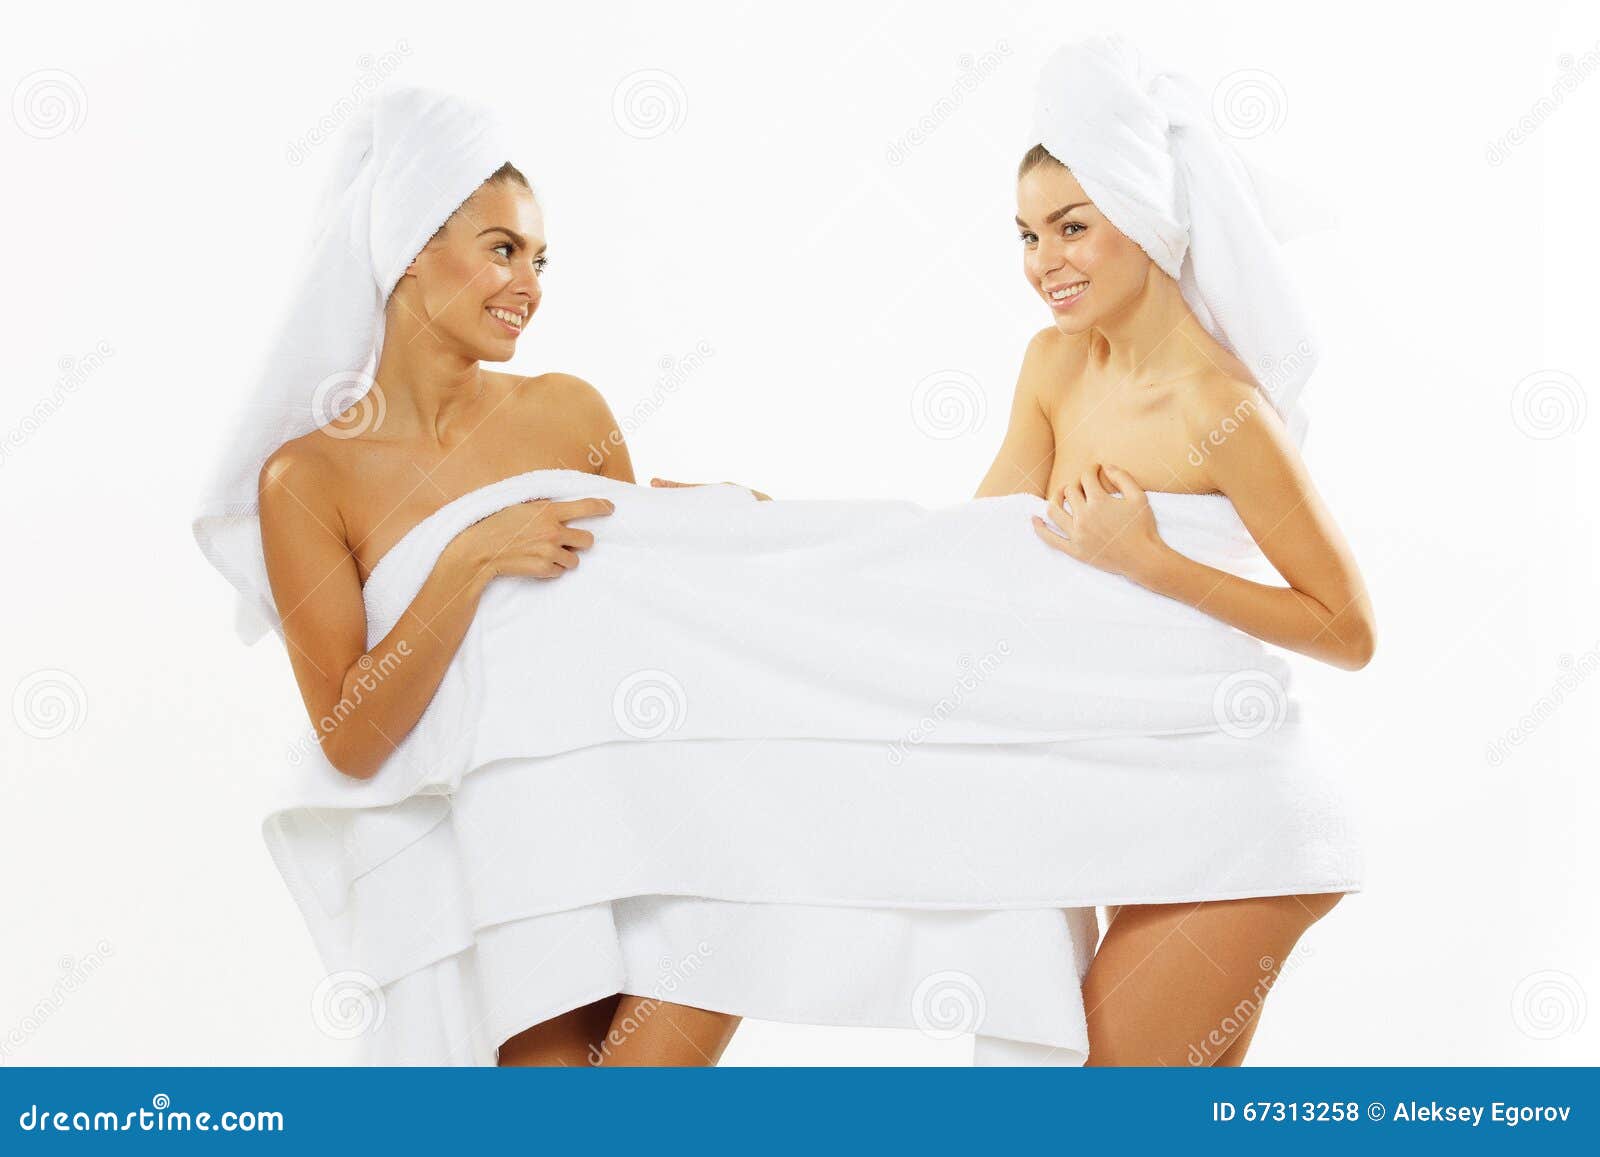 Ходит в полотенце. Две девушки в полотенцах. Девушка придерживает полотенце. Три девушки в полотенцах. Блондинка в полотенце.